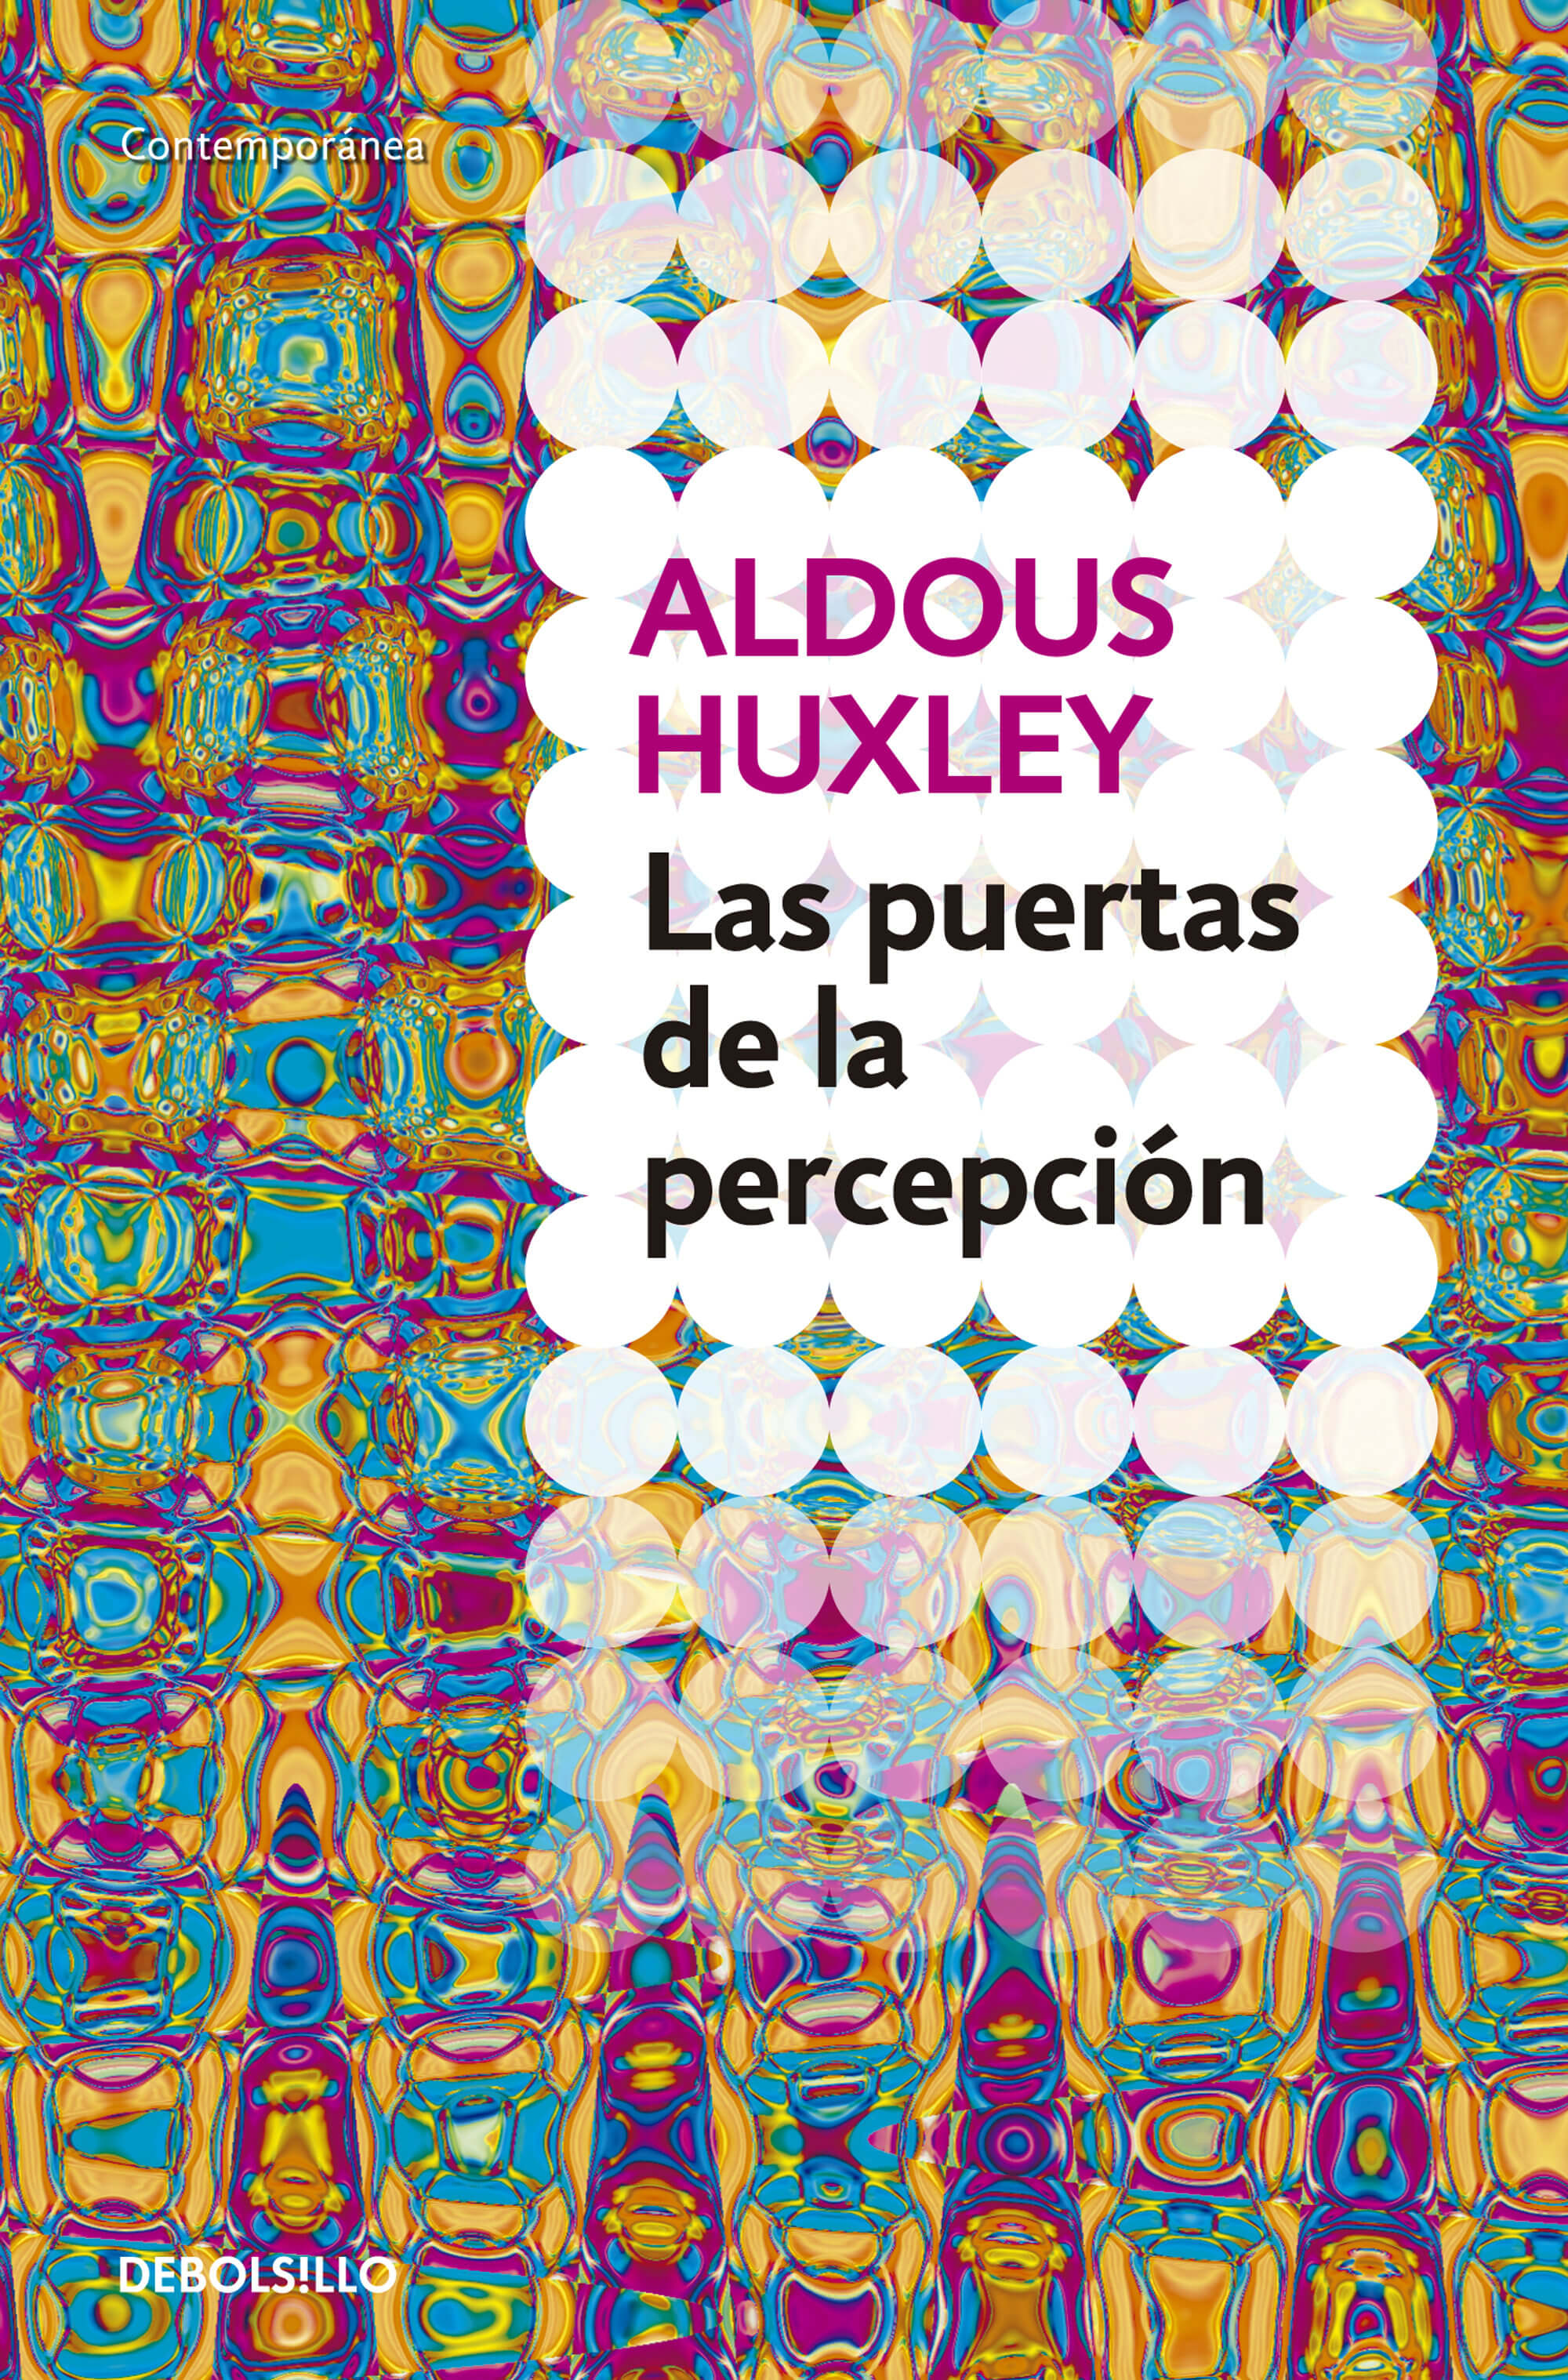 Las puertas de la percepción de Aldous Huxley en selección de libros de literatura y LSD